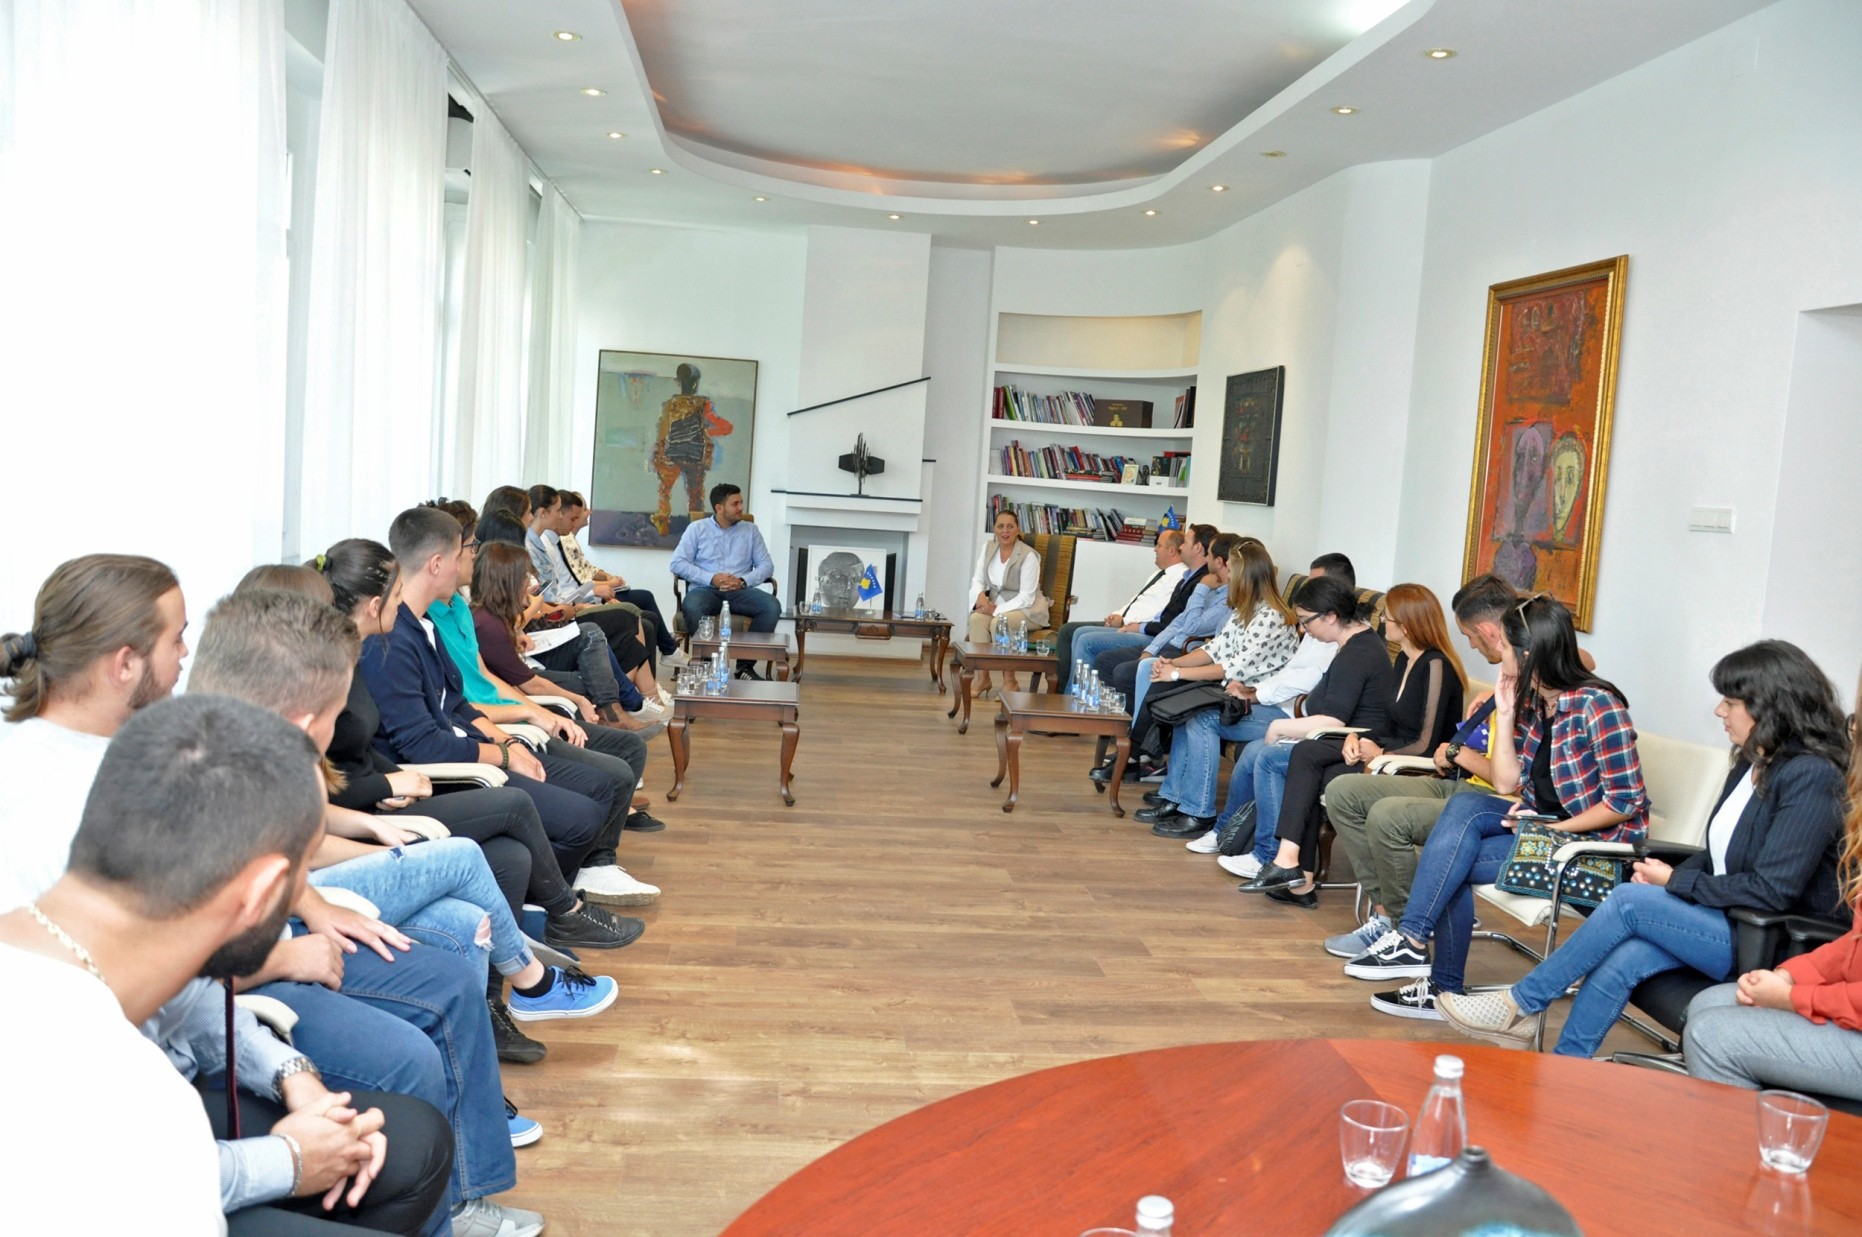 Të rinjtë, pjesa më potenciale e Kosovës